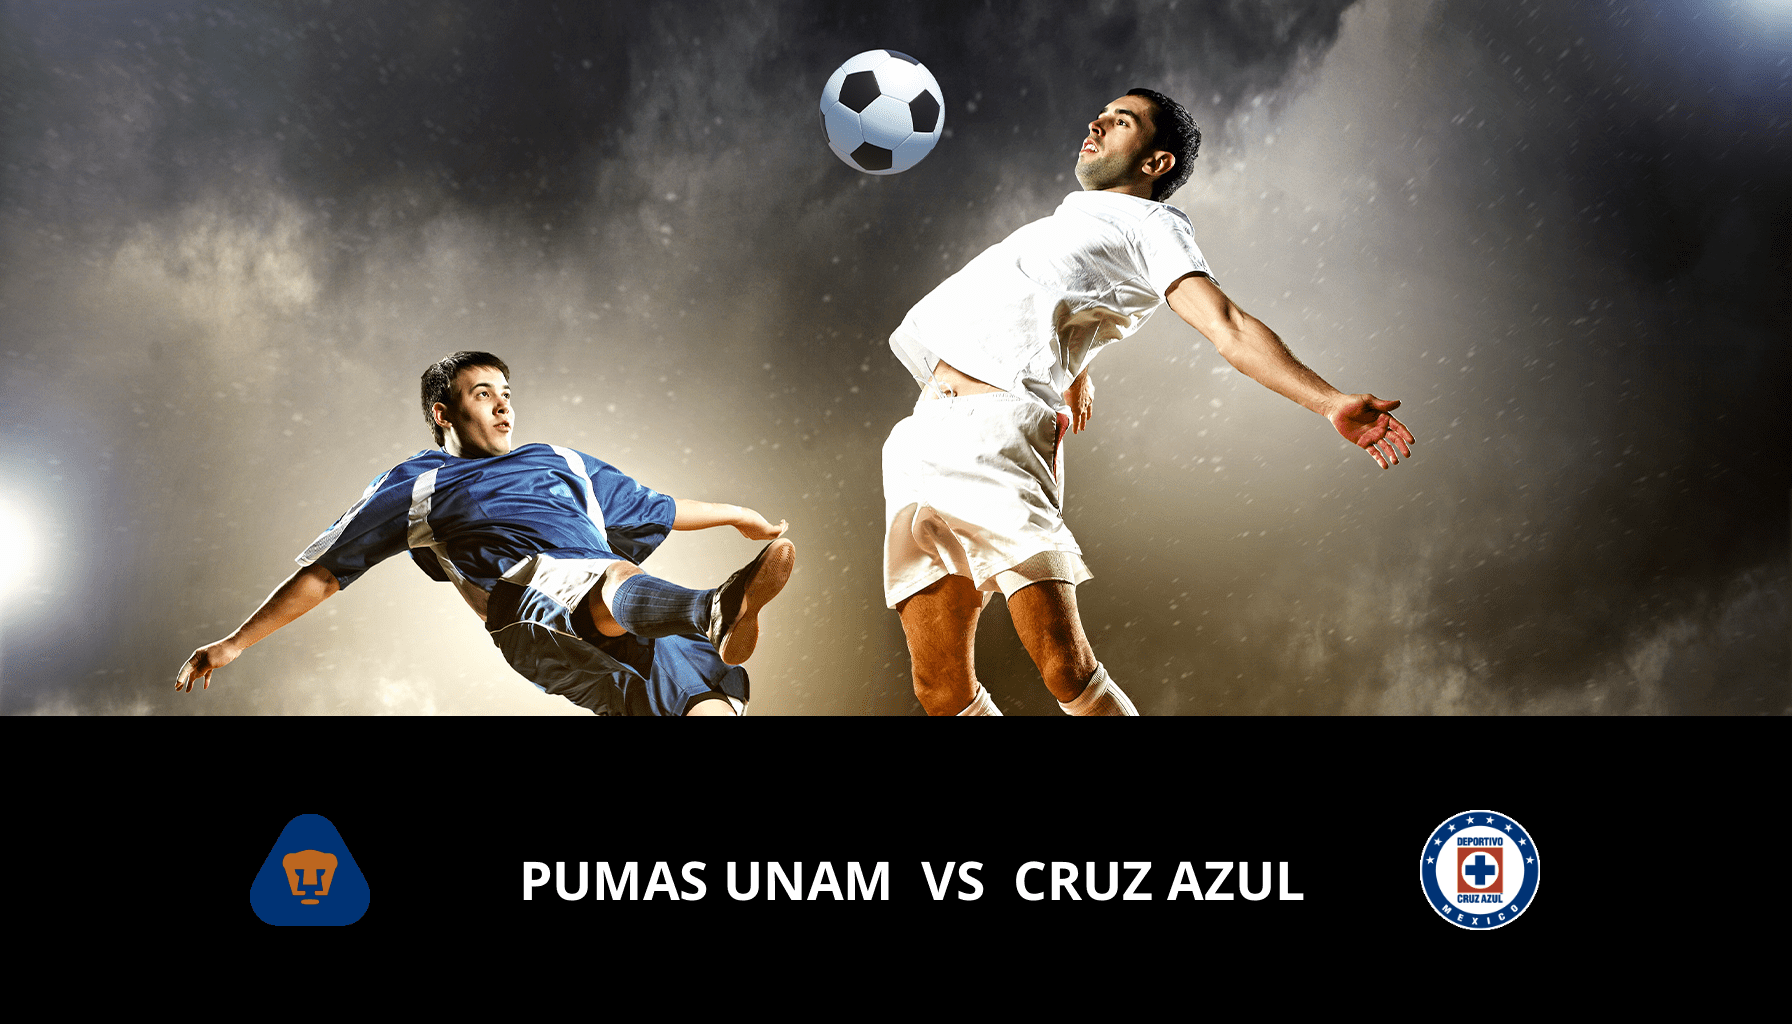 Previsione per UNAM – Pumas VS Cruz Azul il 08/05/2024 Analysis of the match